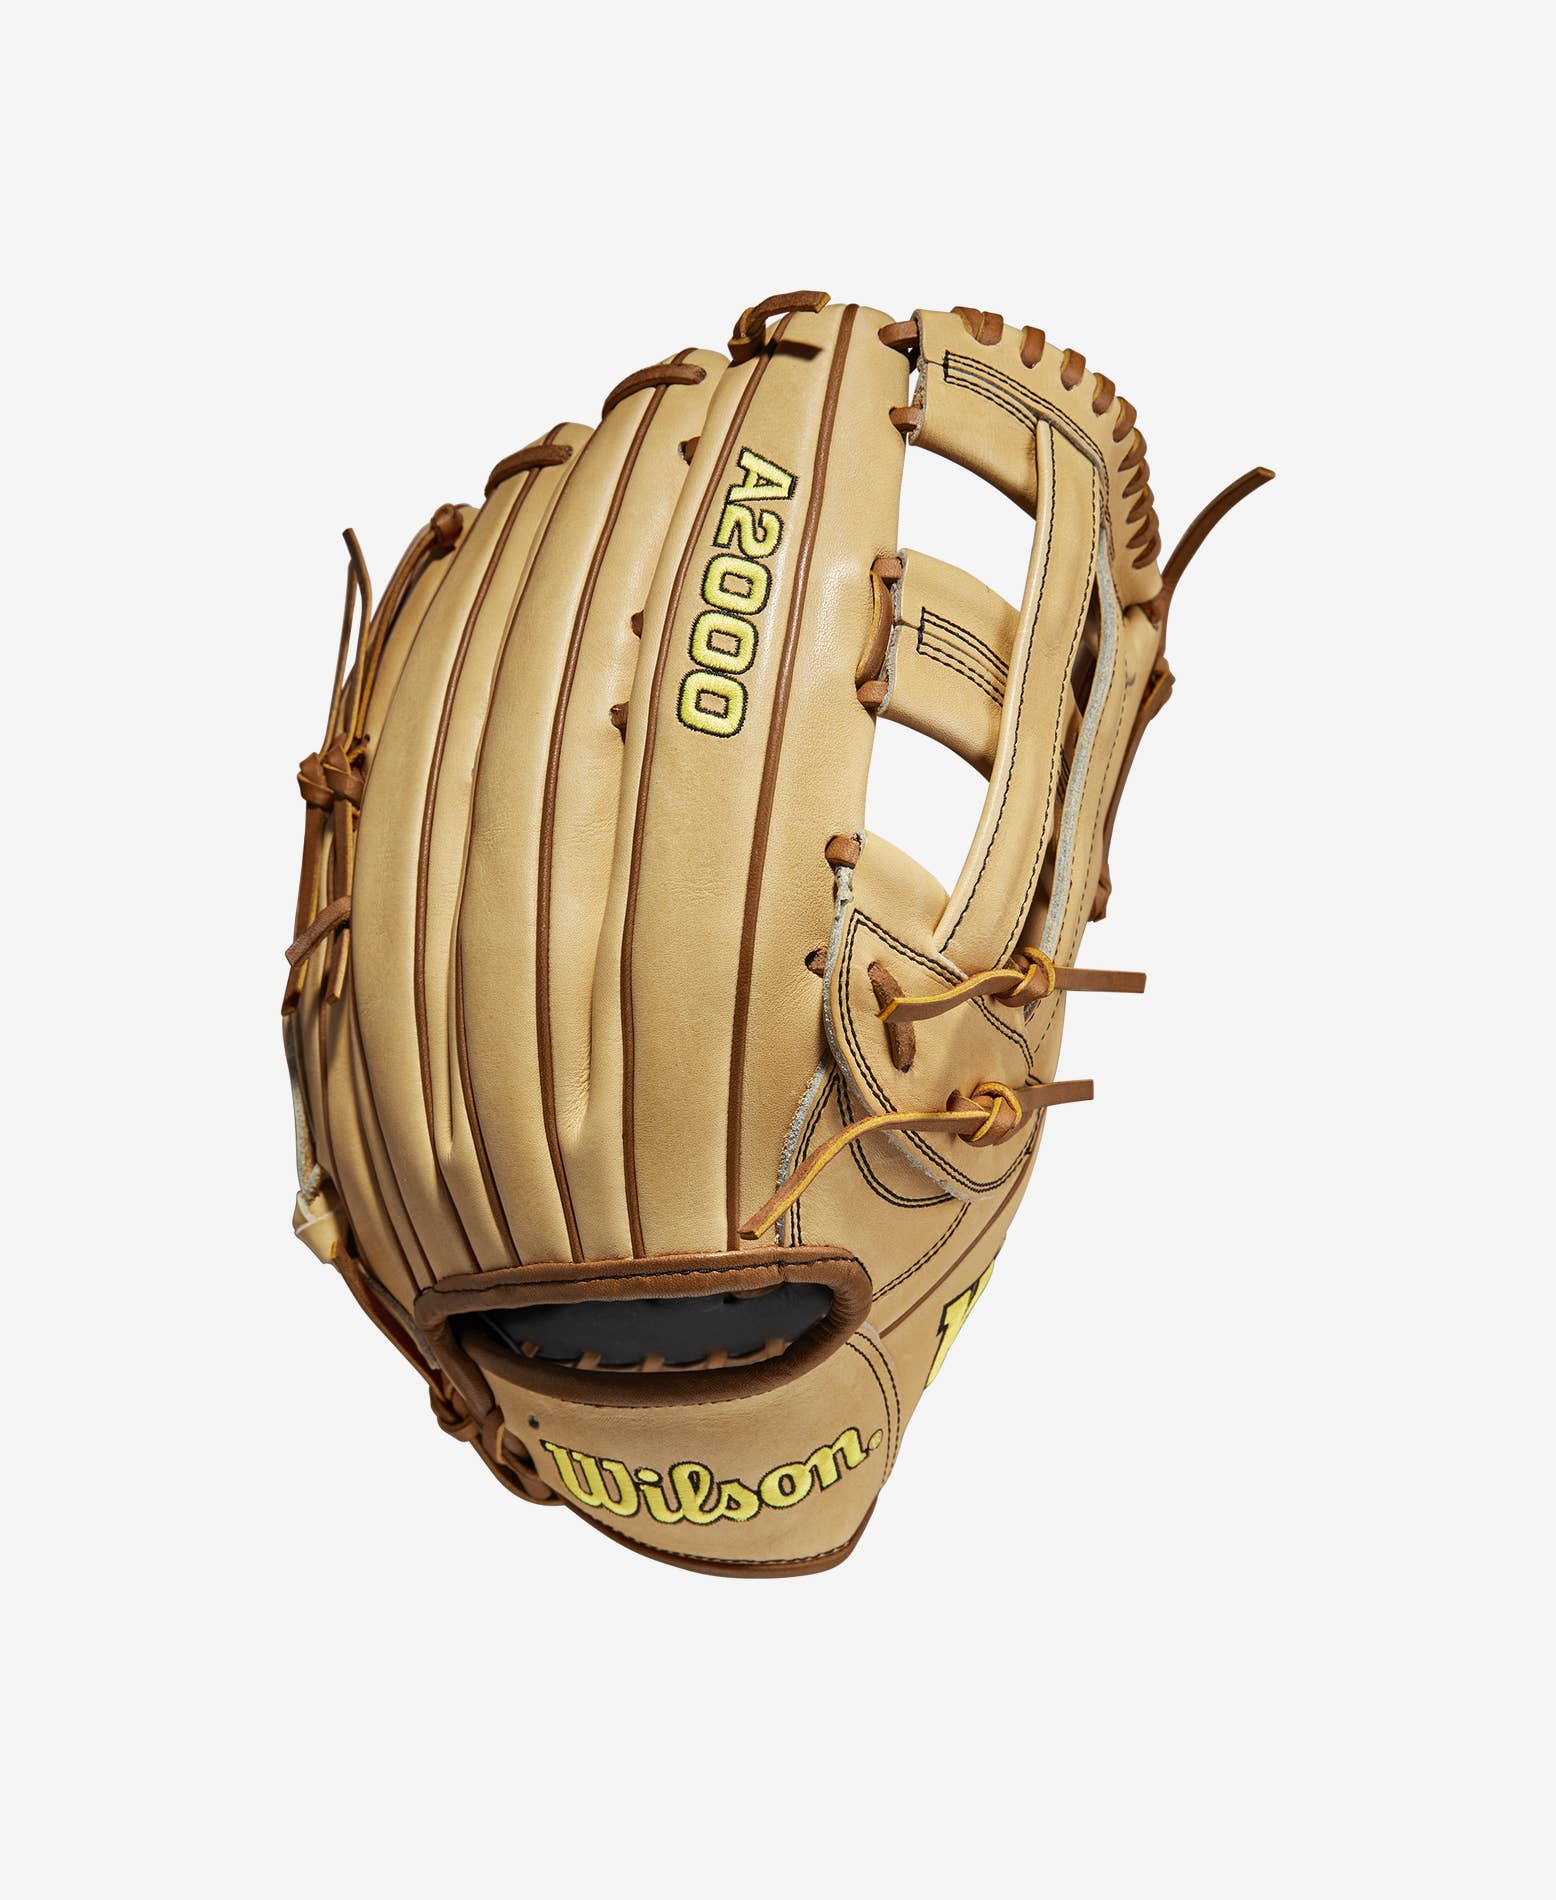 Wilson A2000 1785SS 11.75 Infield Baseball Glove